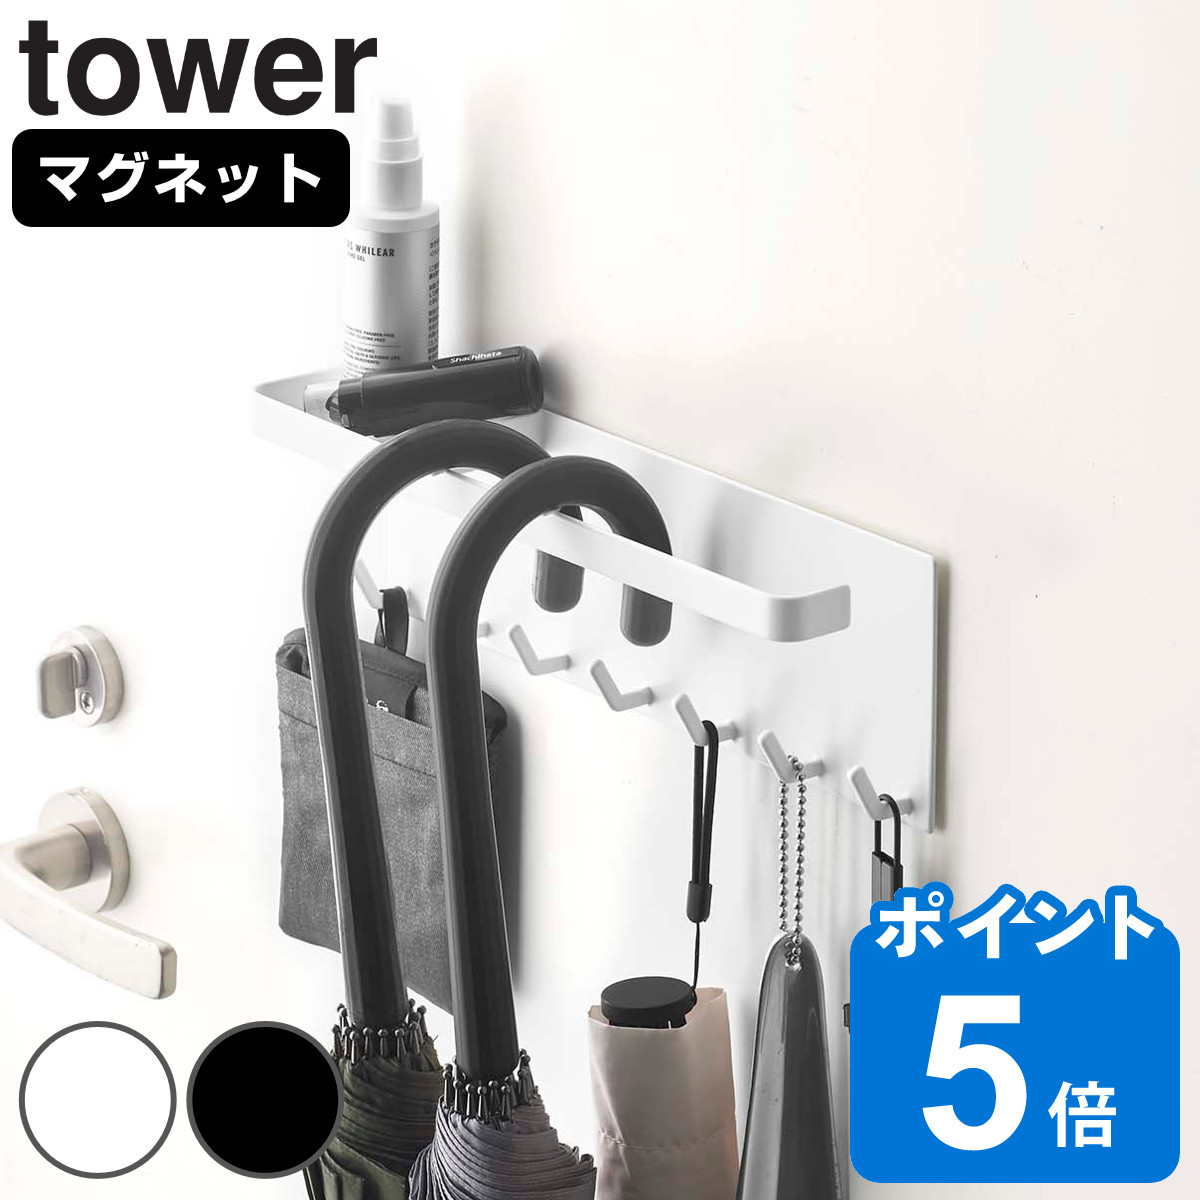 山崎実業 tower トレー付き マグネットアンブレラホルダー タワー